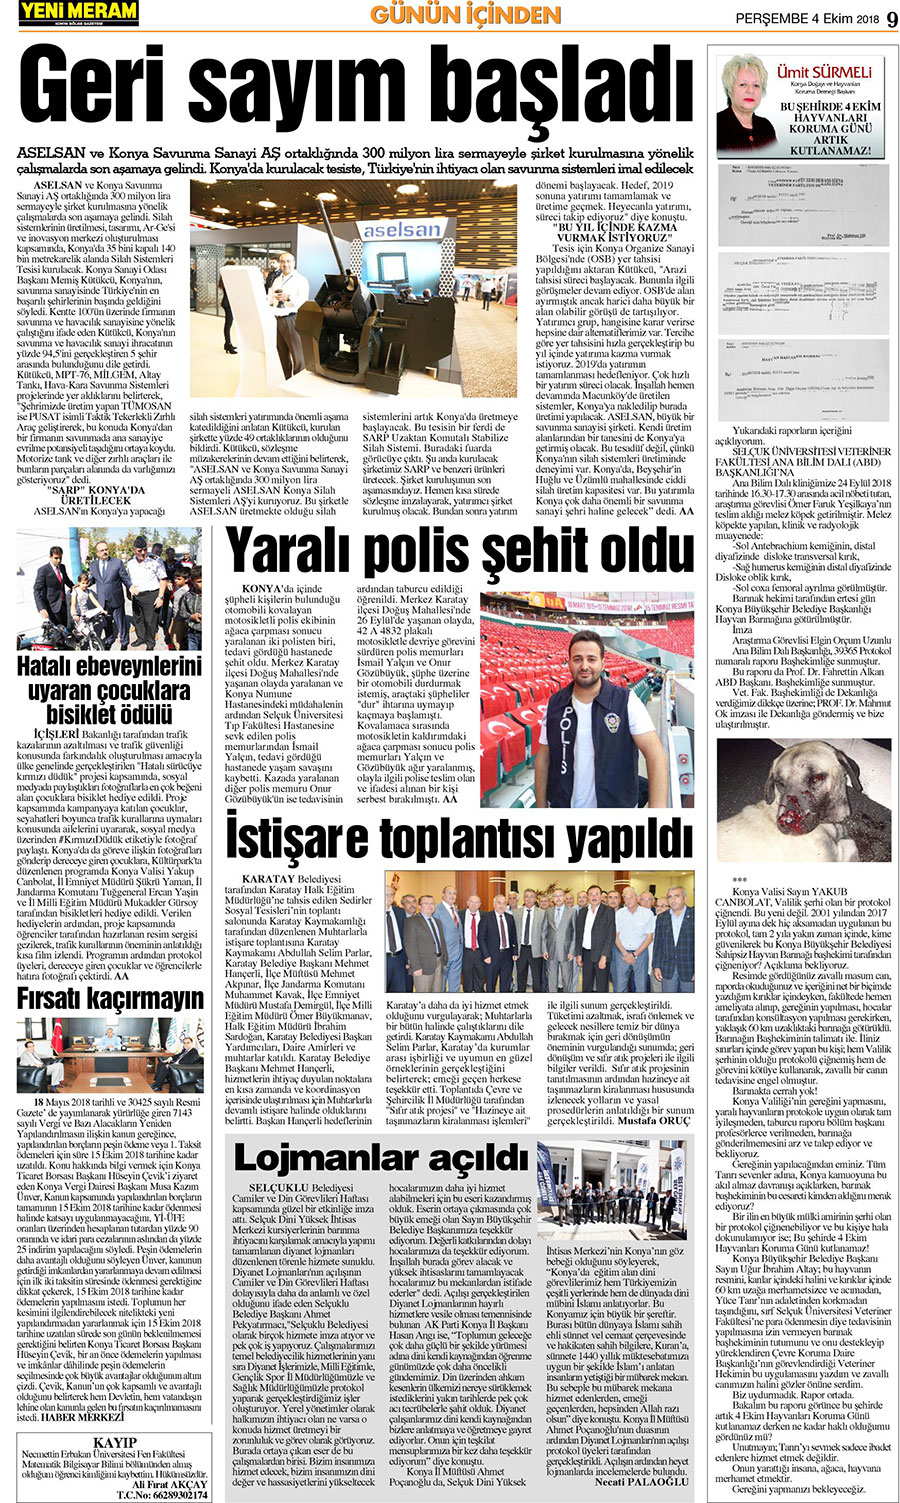 4 Ekim 2018 Yeni Meram Gazetesi